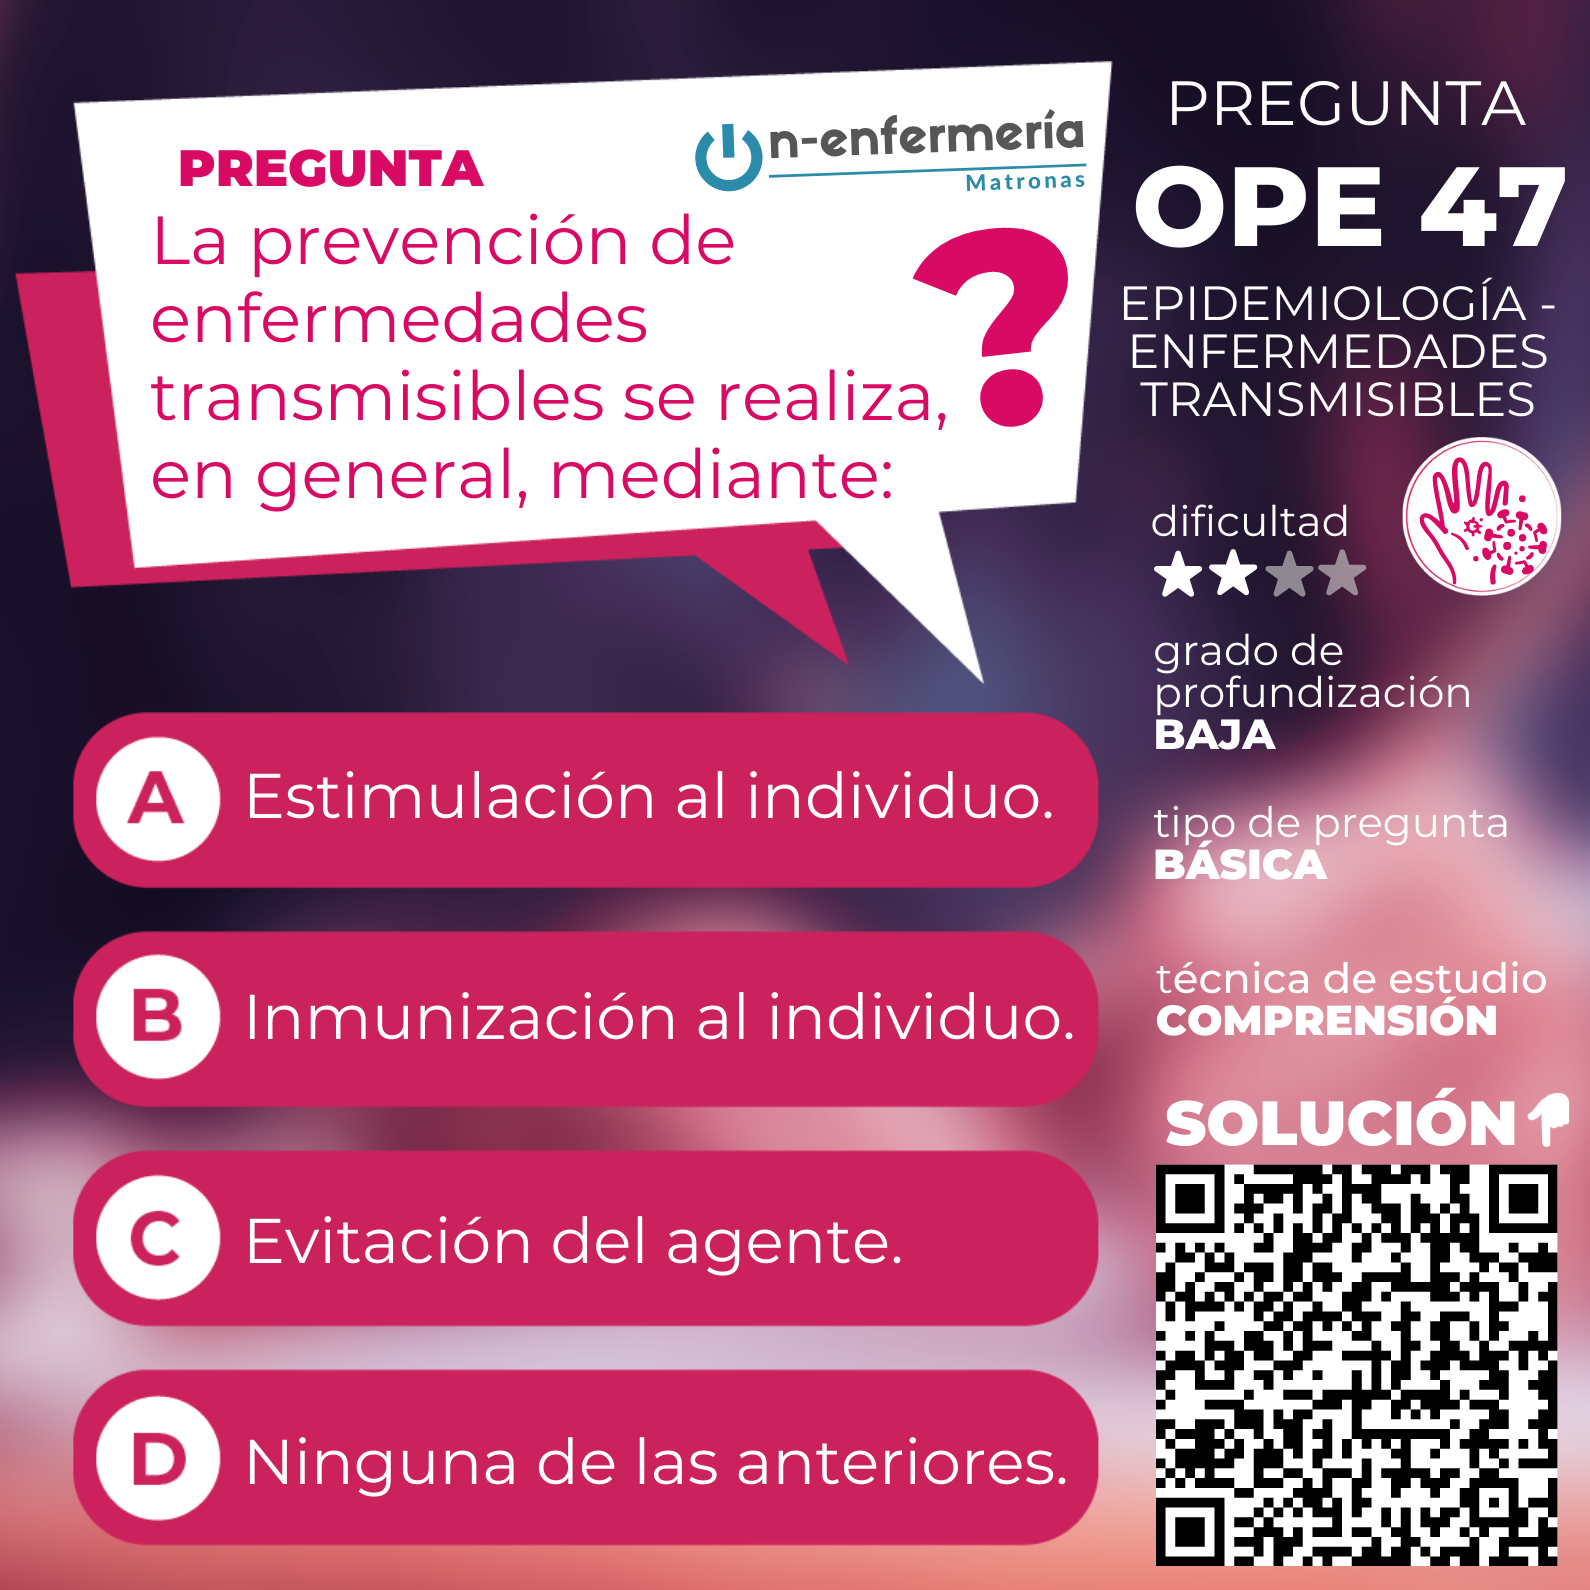 Pregunta examen OPE Matronas nº 47 Epidemiología - enfermedades transmisibles